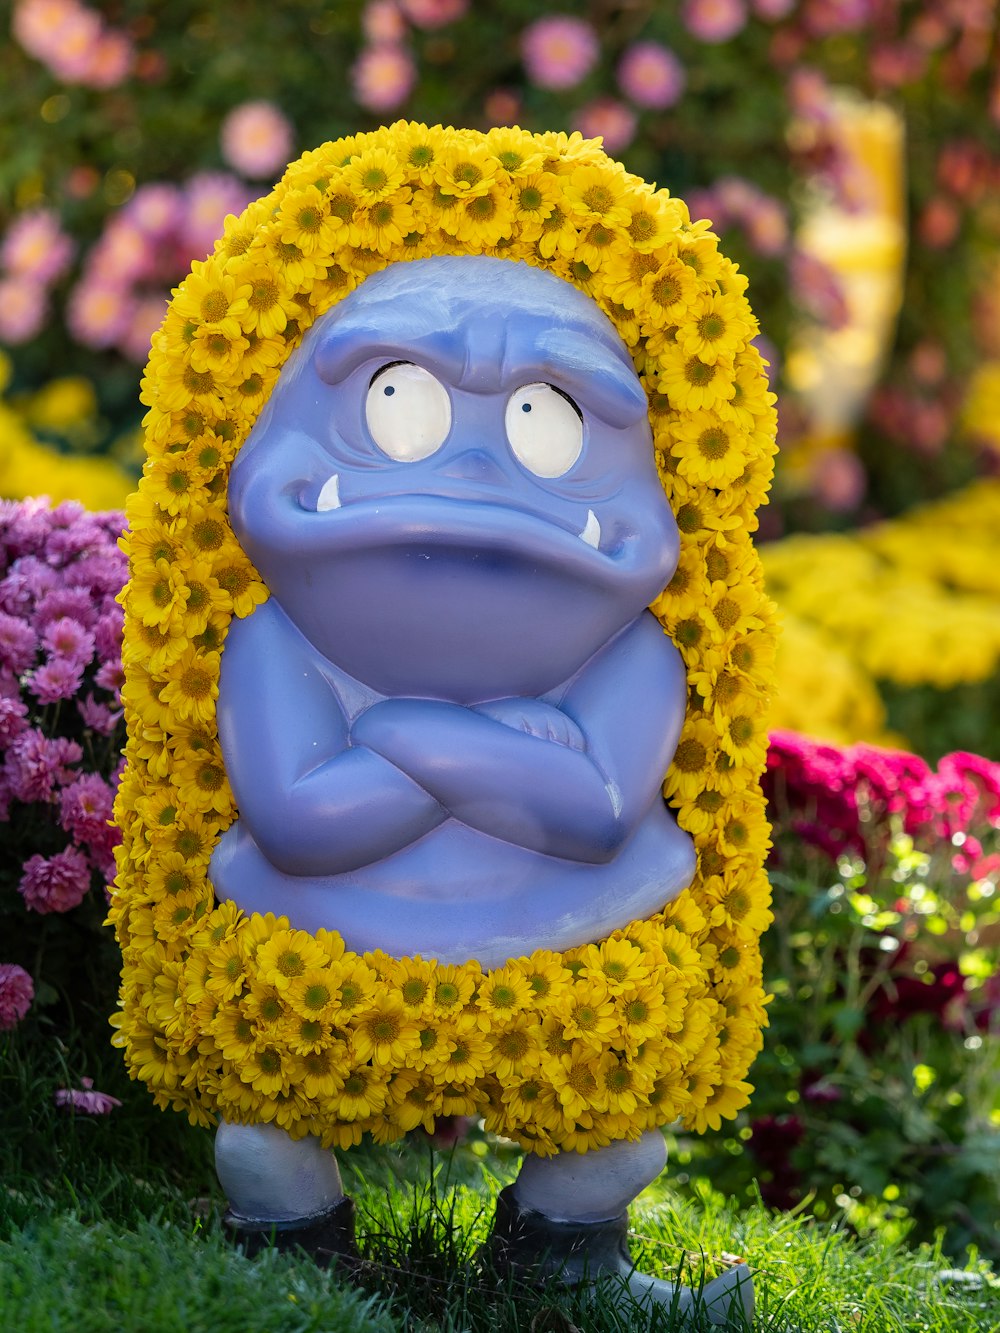 a statue of a man in a flower garden